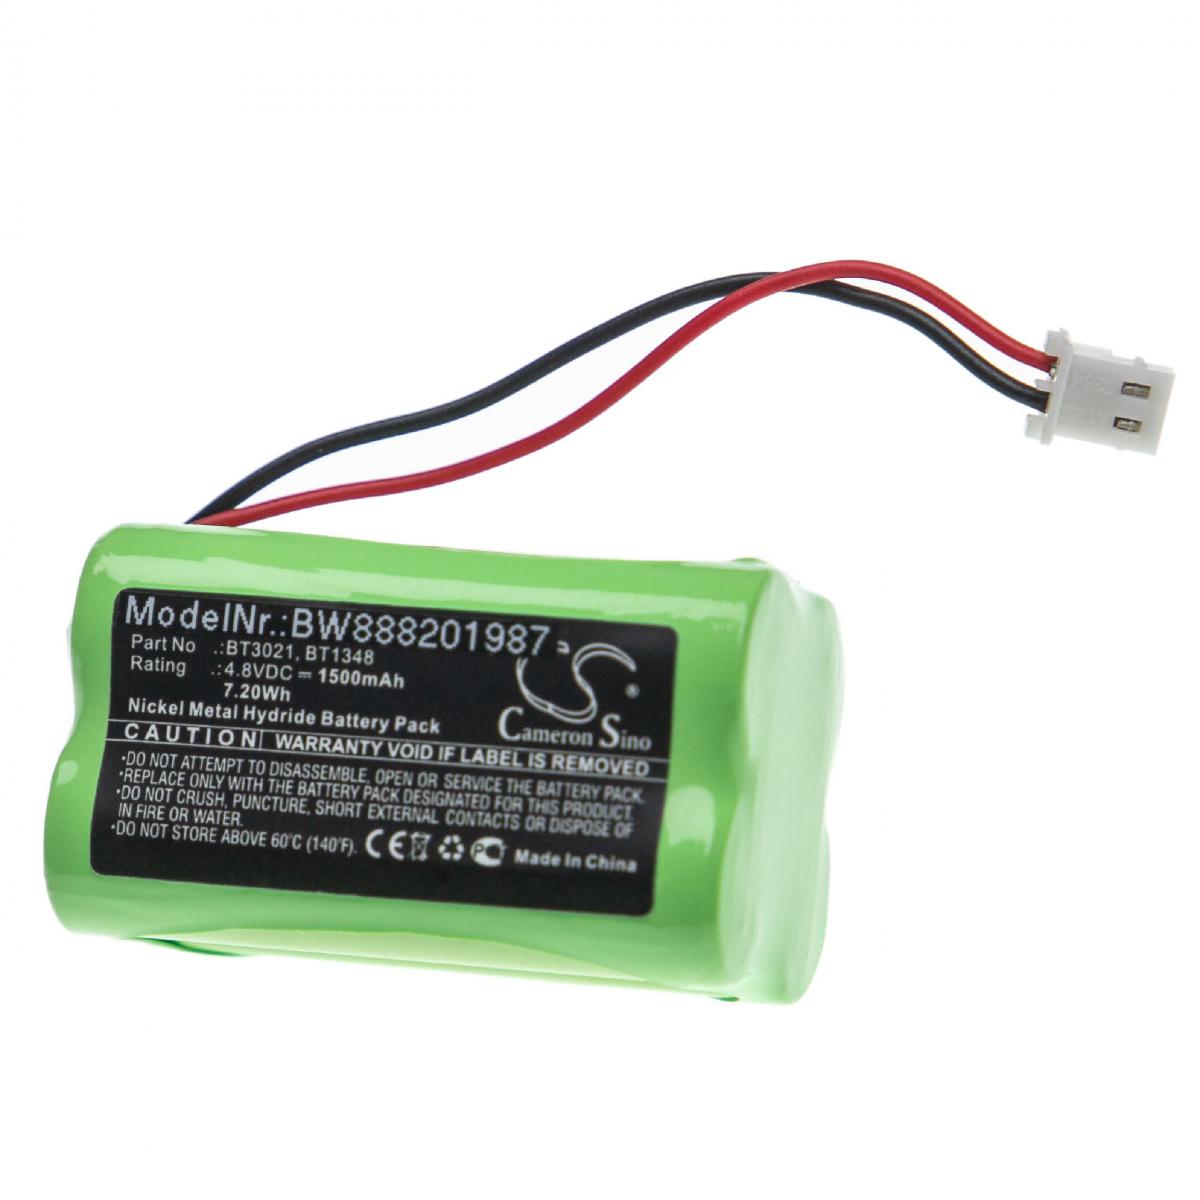 Vhbw - vhbw batterie compatible avec Commpact Secuself Control Panel alarme maison/contrôle home security (1500mAh, 4,8V, NiMH) - Autre appareil de mesure